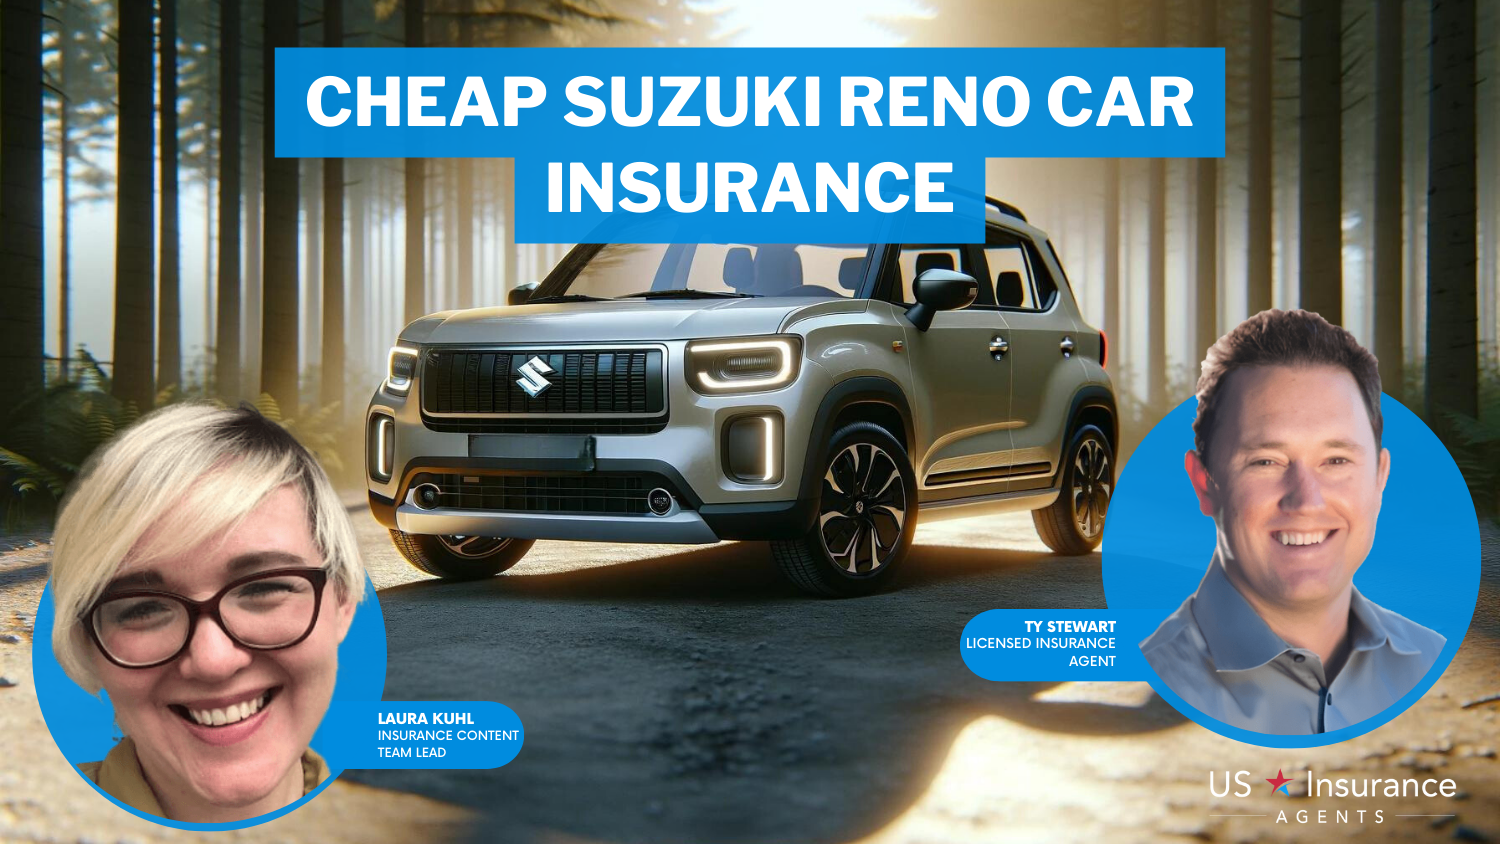 Progressive, State Farm and Allstate: cheap Suzuki Reno car insurance